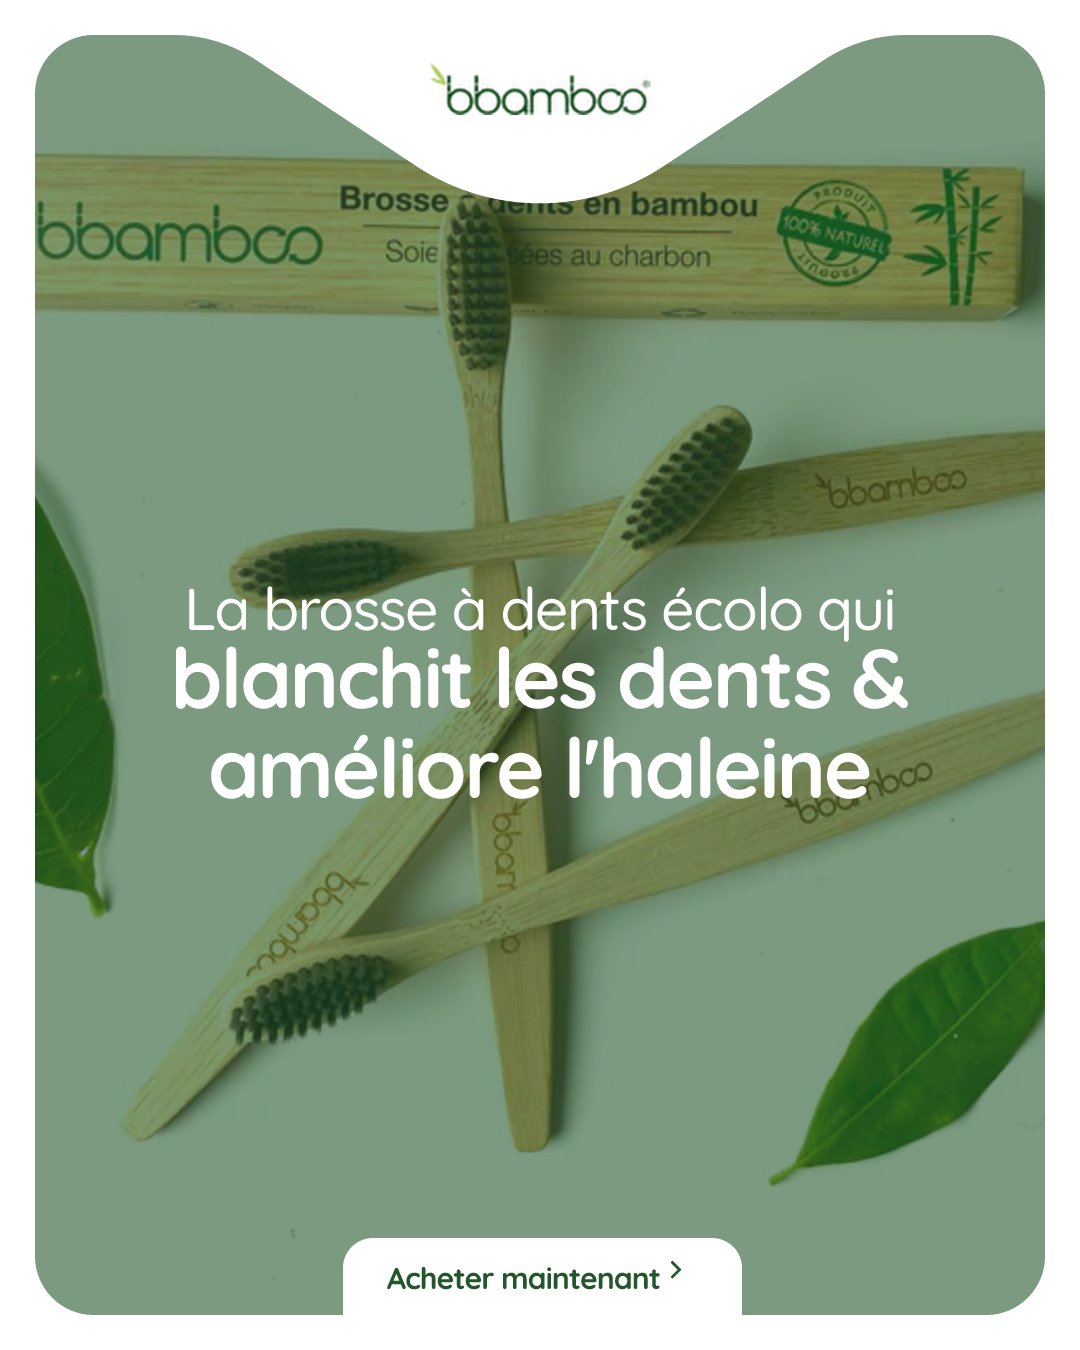 Les avantages d’utiliser une brosse à dents en bambou par rapport à une brosse à dents classique - Bbamboo